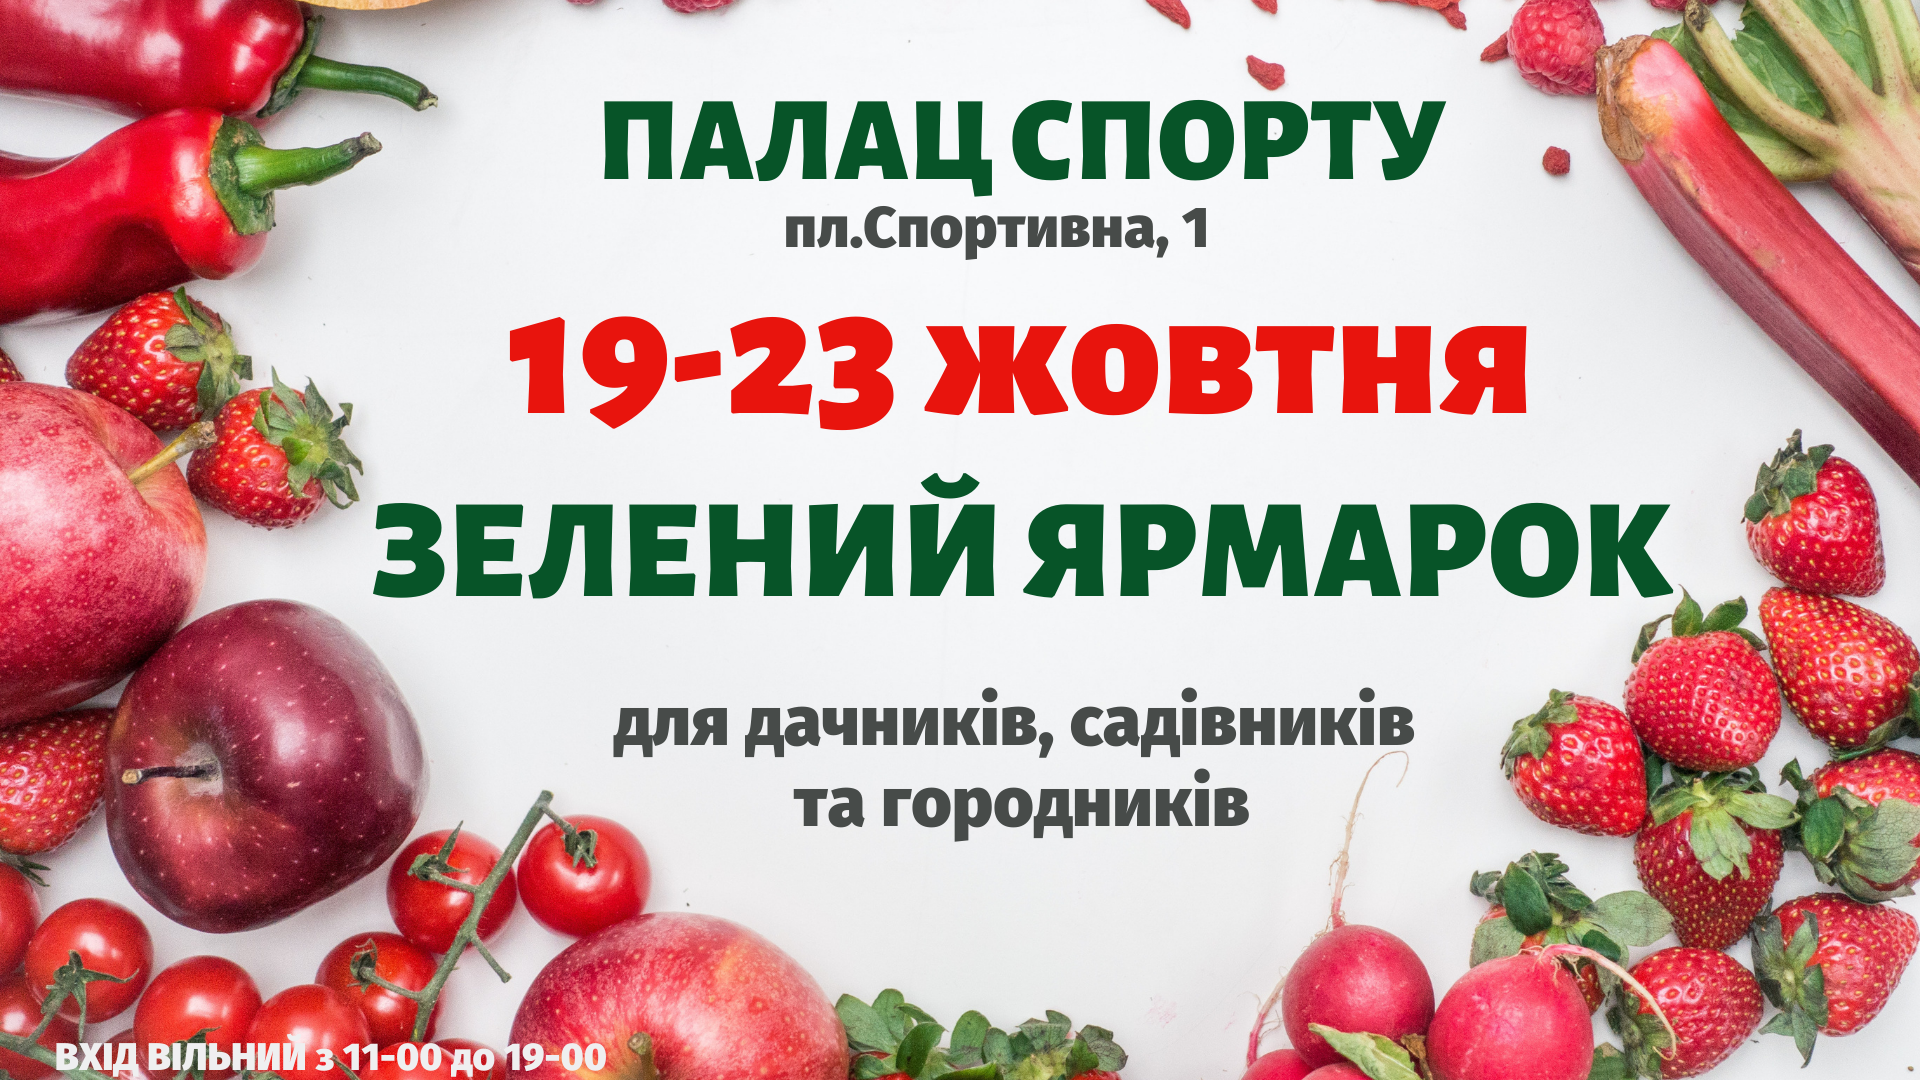 Зелений ярмарок у київському палаці спорту 19 - 23 жовтня